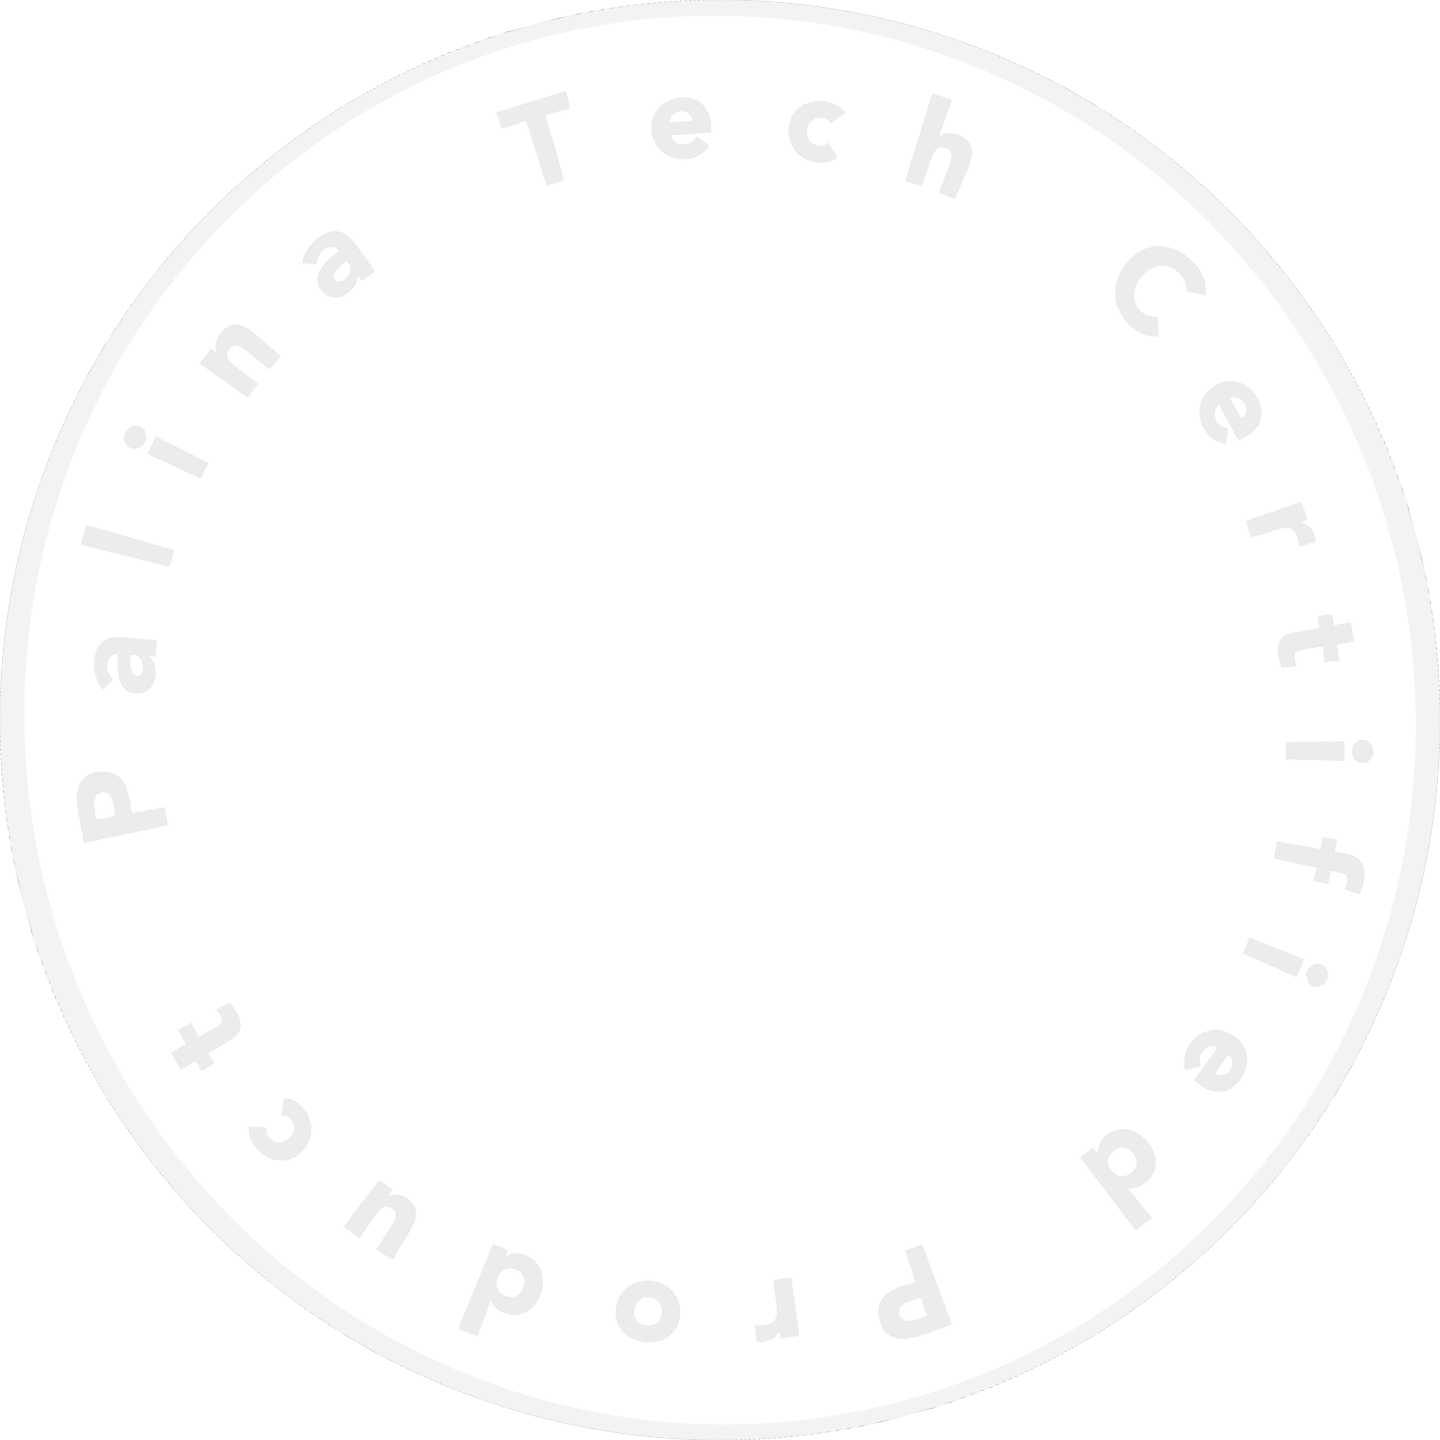 Palina Tech Zertifikate